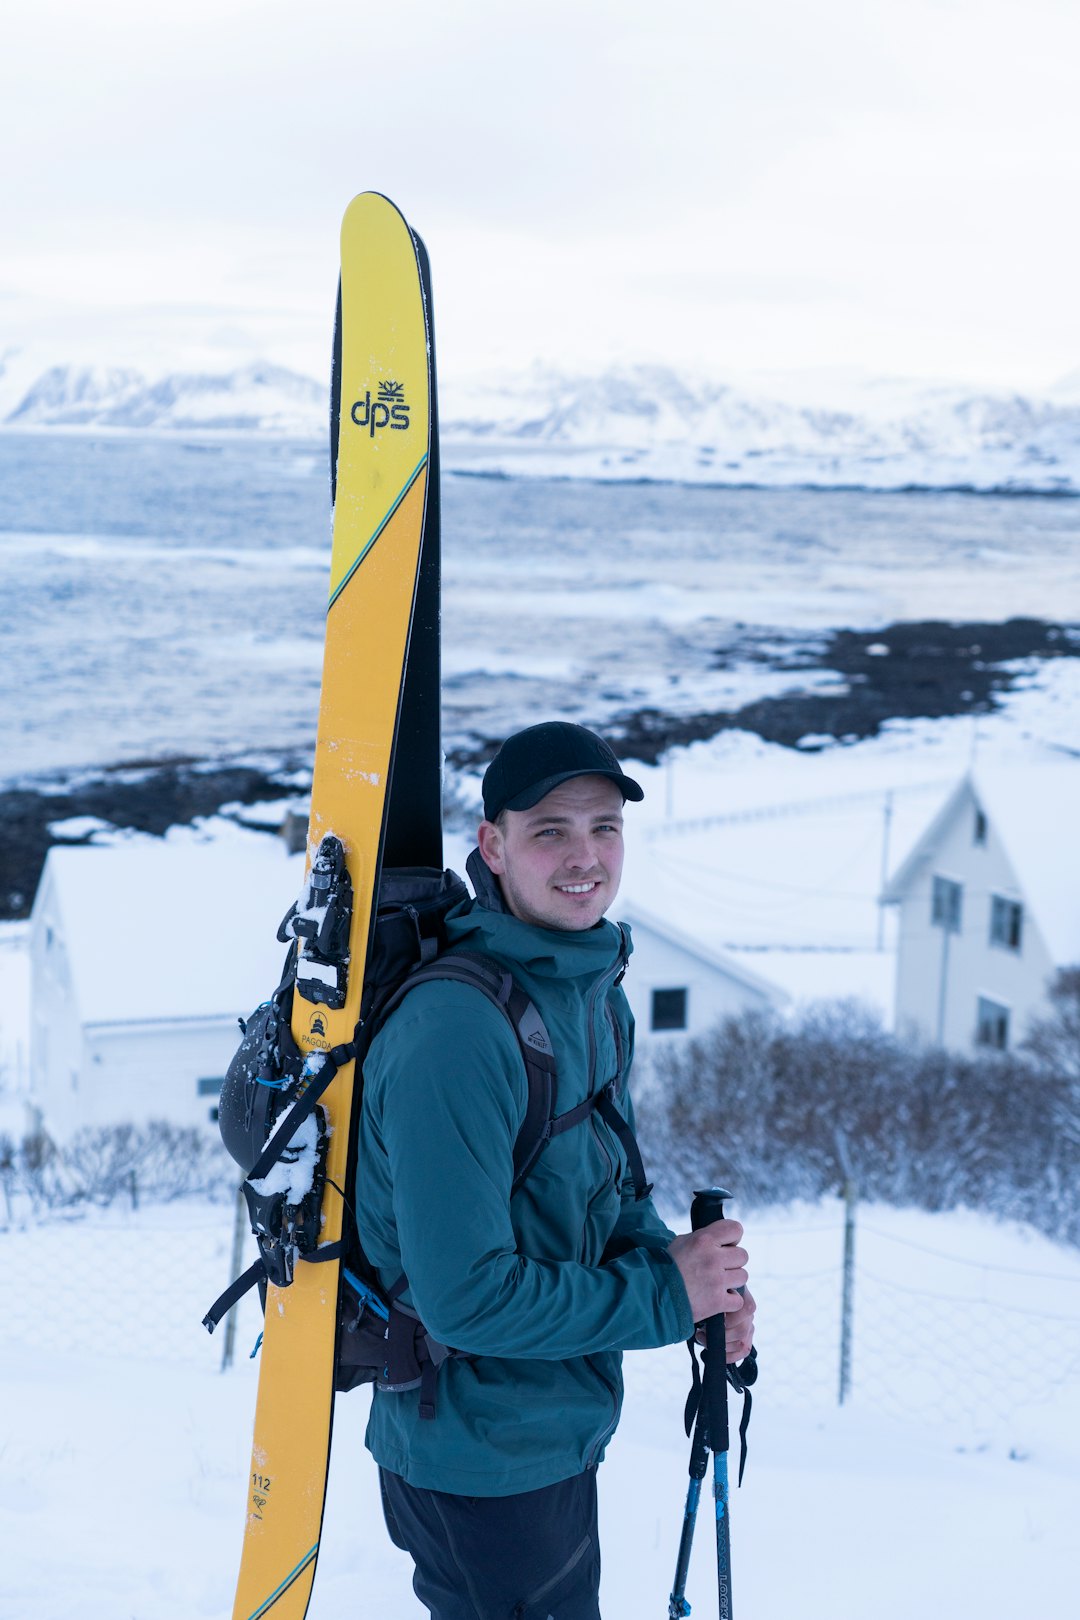 NÅR FUGLEFJELLET ER LOKALFJELLET: Truls Paulsen har Fuglefjellet som sitt lokal-fjell. Foto: Elias Reite